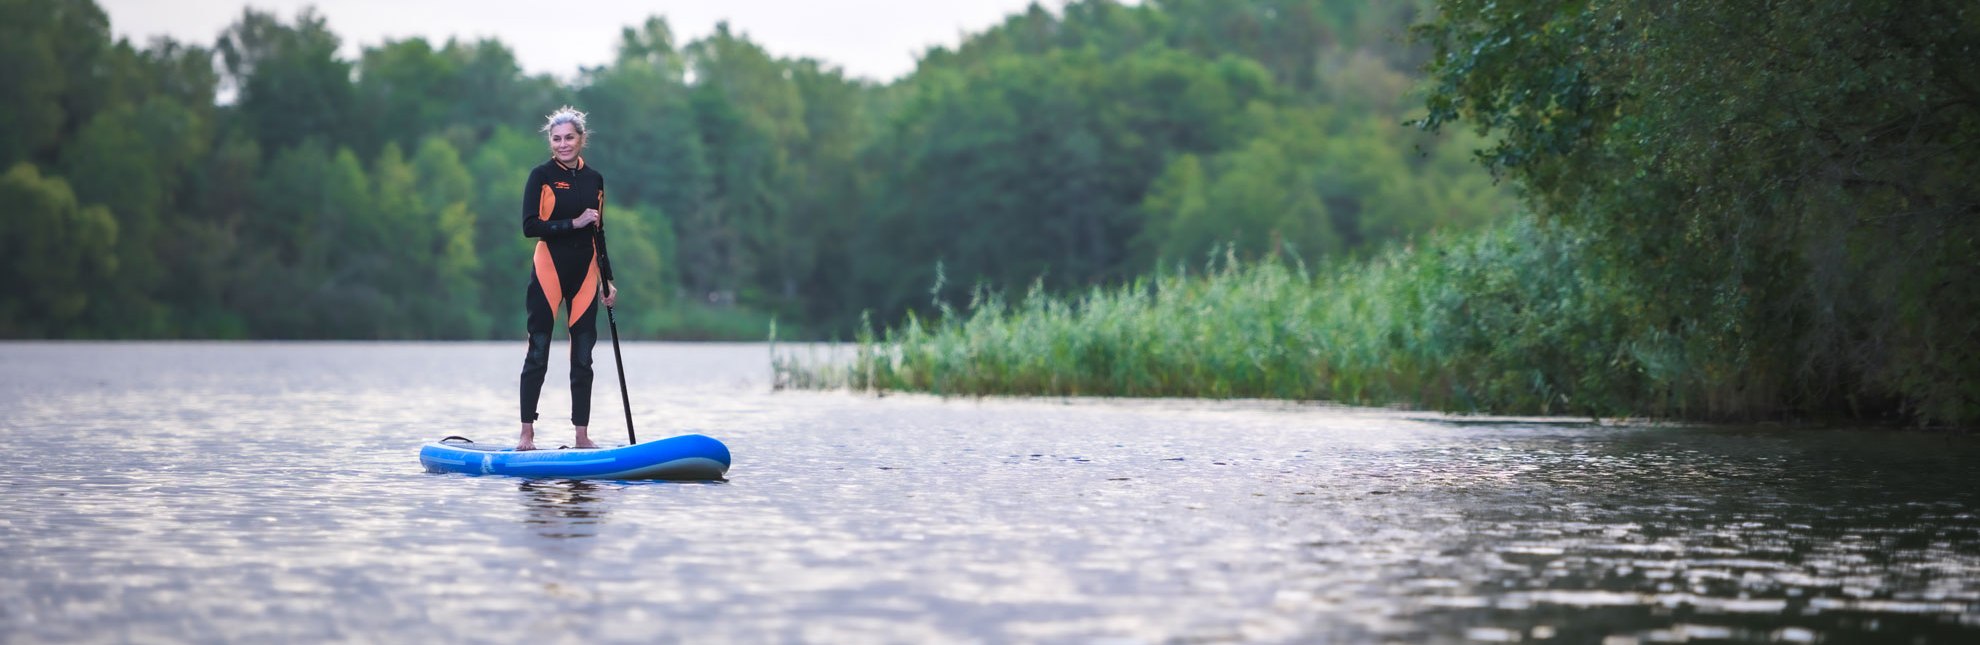 Herrlich entspannt gleitet man beim Stand-up Paddling über den See., © Alex K. Media / HLMS GmbH